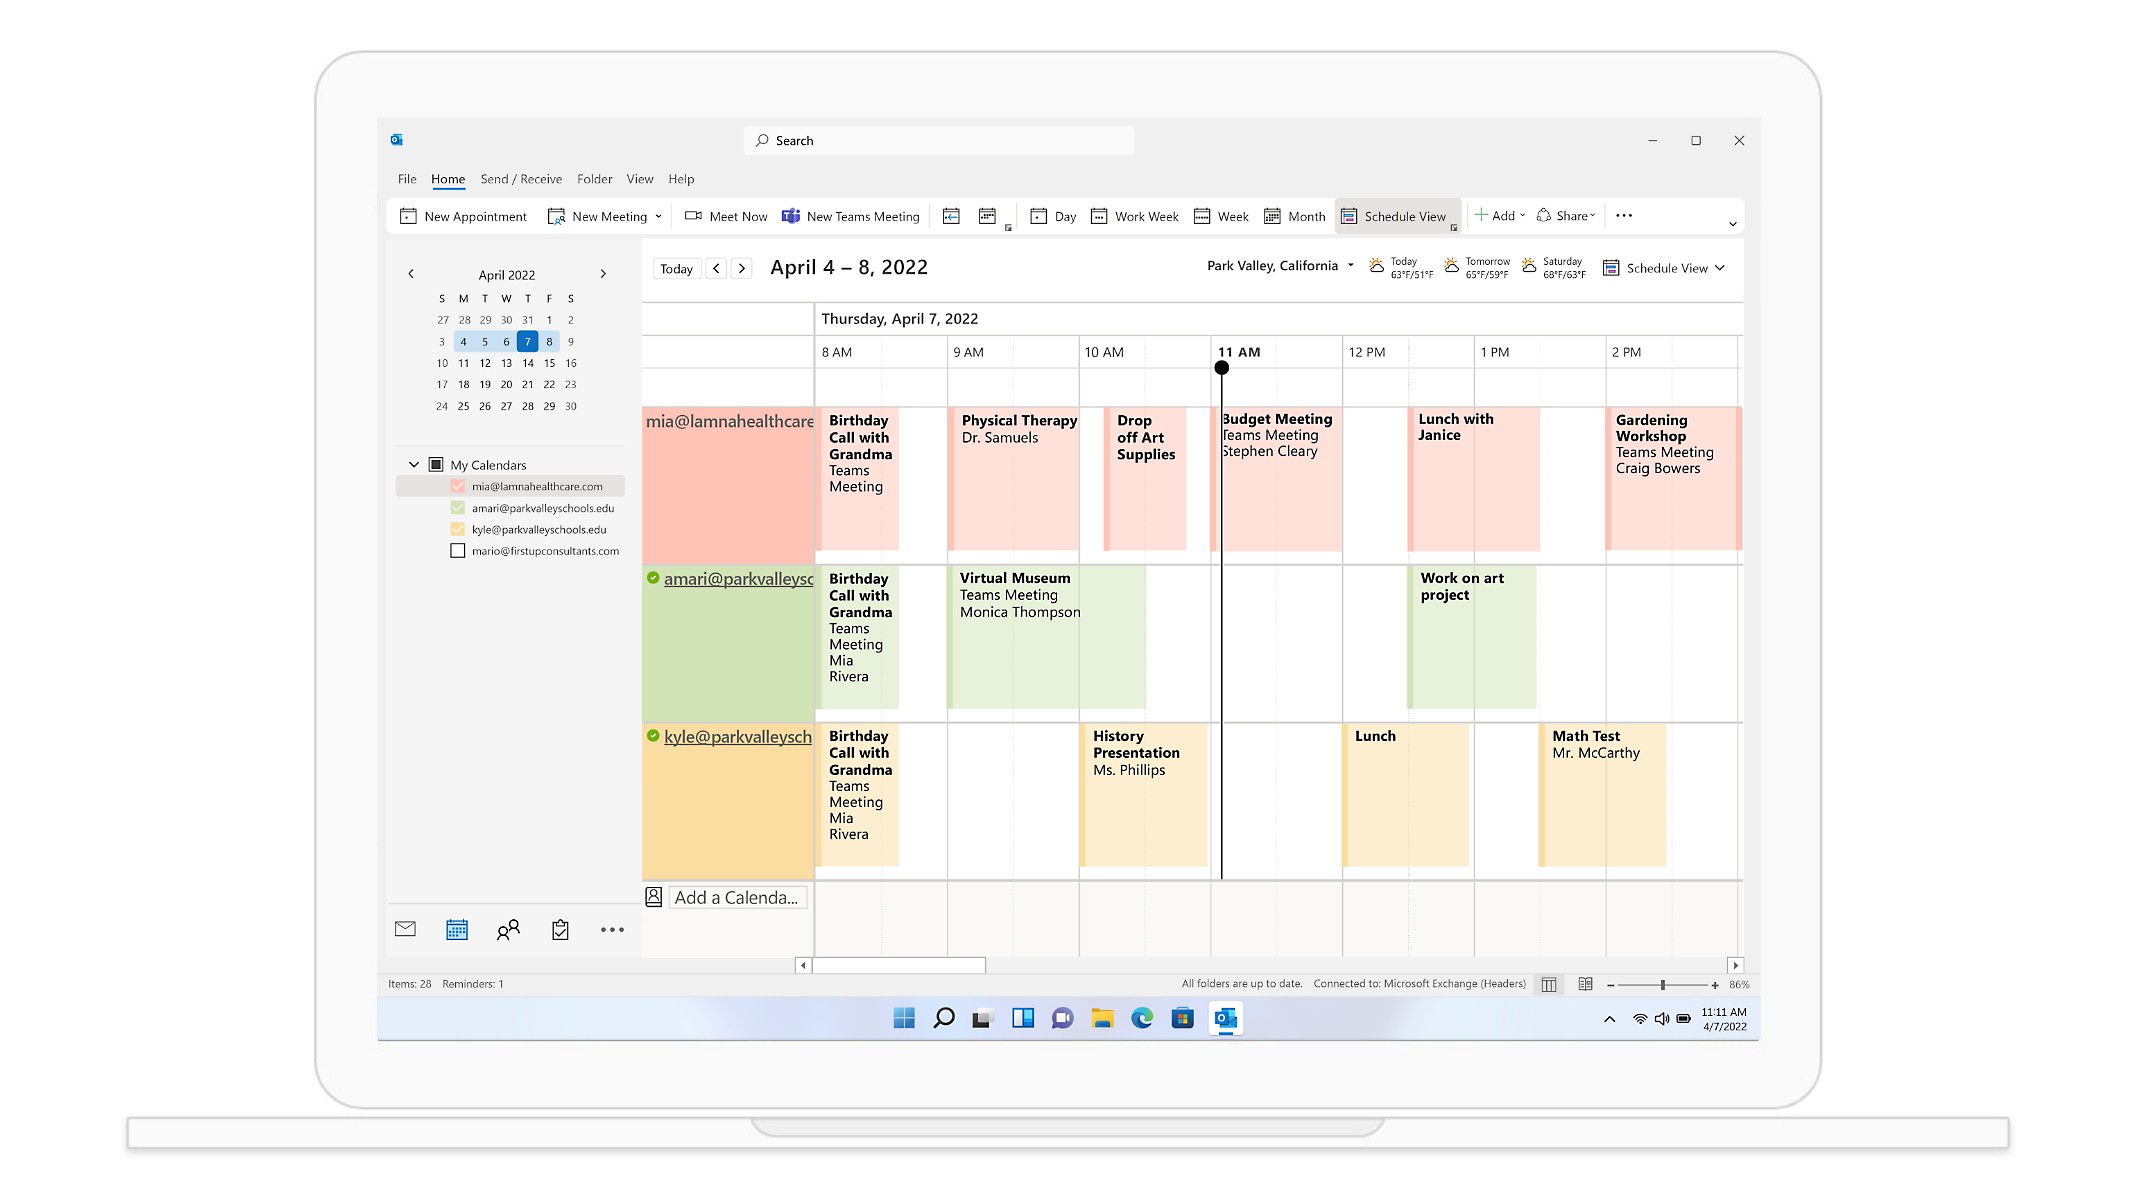 Una visualizzazione Calendario in Outlook che mostra riunioni e appuntamenti per la settimana del 29 marzo.